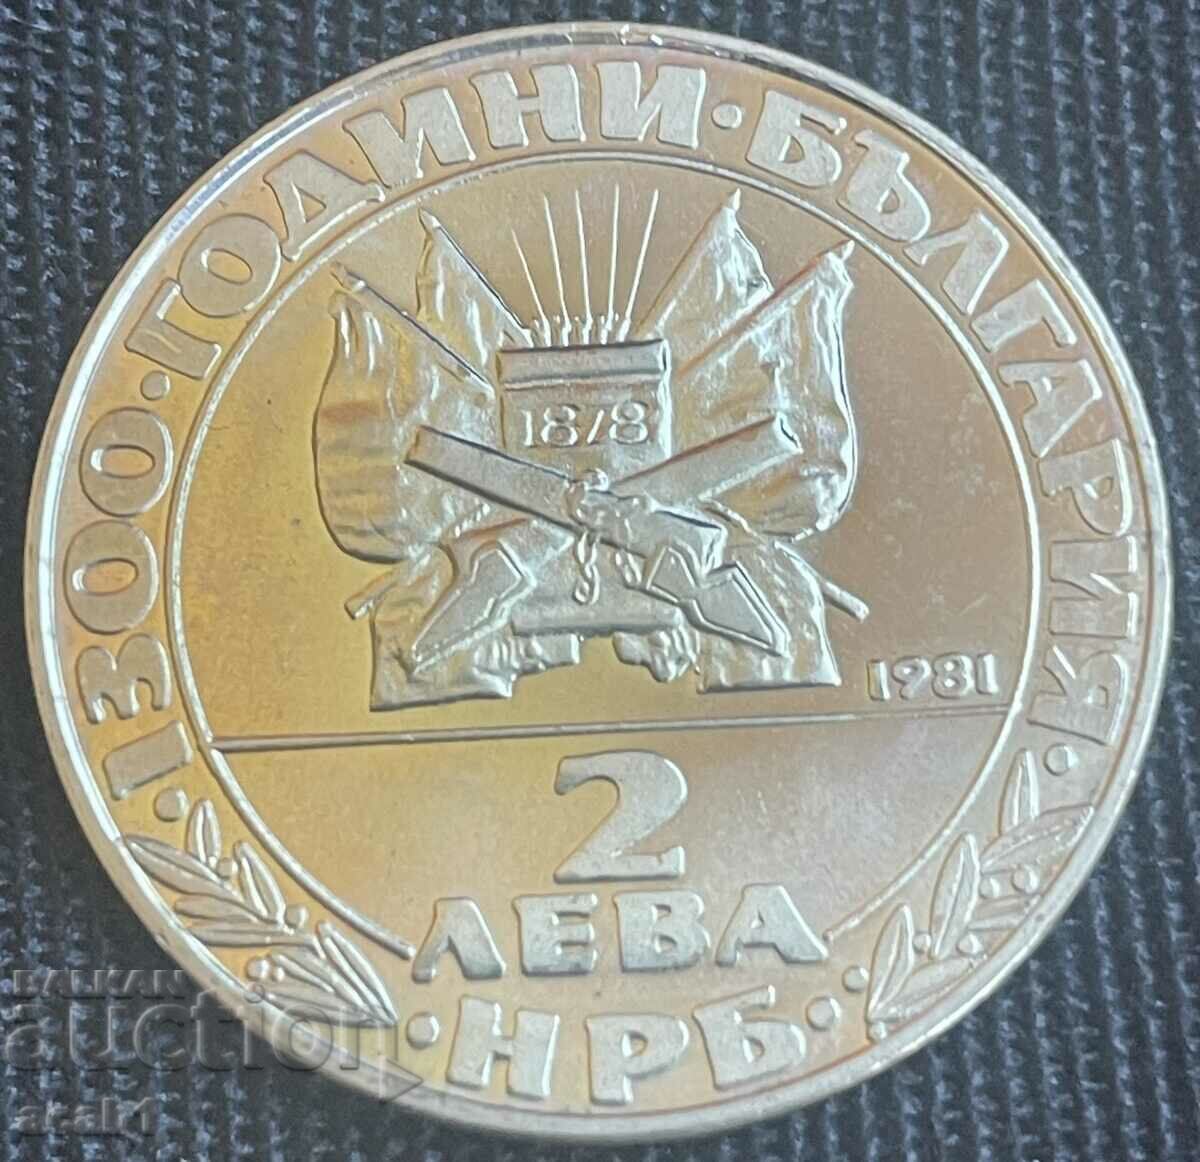 2 лева 1981 - 1300 години България Освобождението